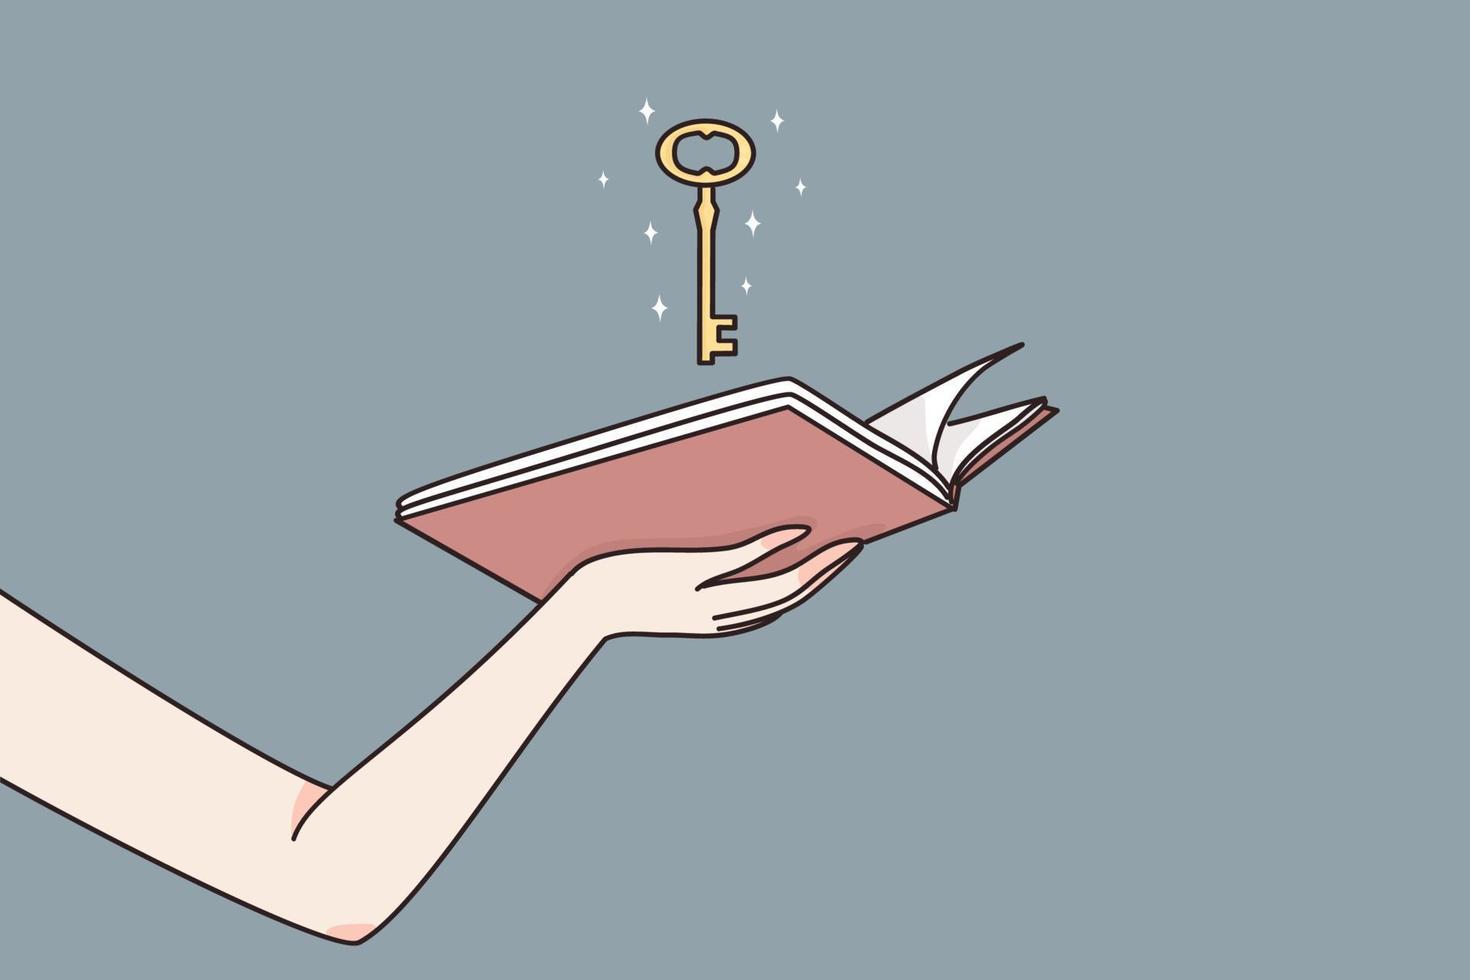 inteligencia, educación, acceso ilimitado al concepto de conocimiento. manos femeninas sosteniendo un libro abierto con una llave dorada mágica que significa la oportunidad de desbloquear la sabiduría en el estudio de la ilustración vectorial vector